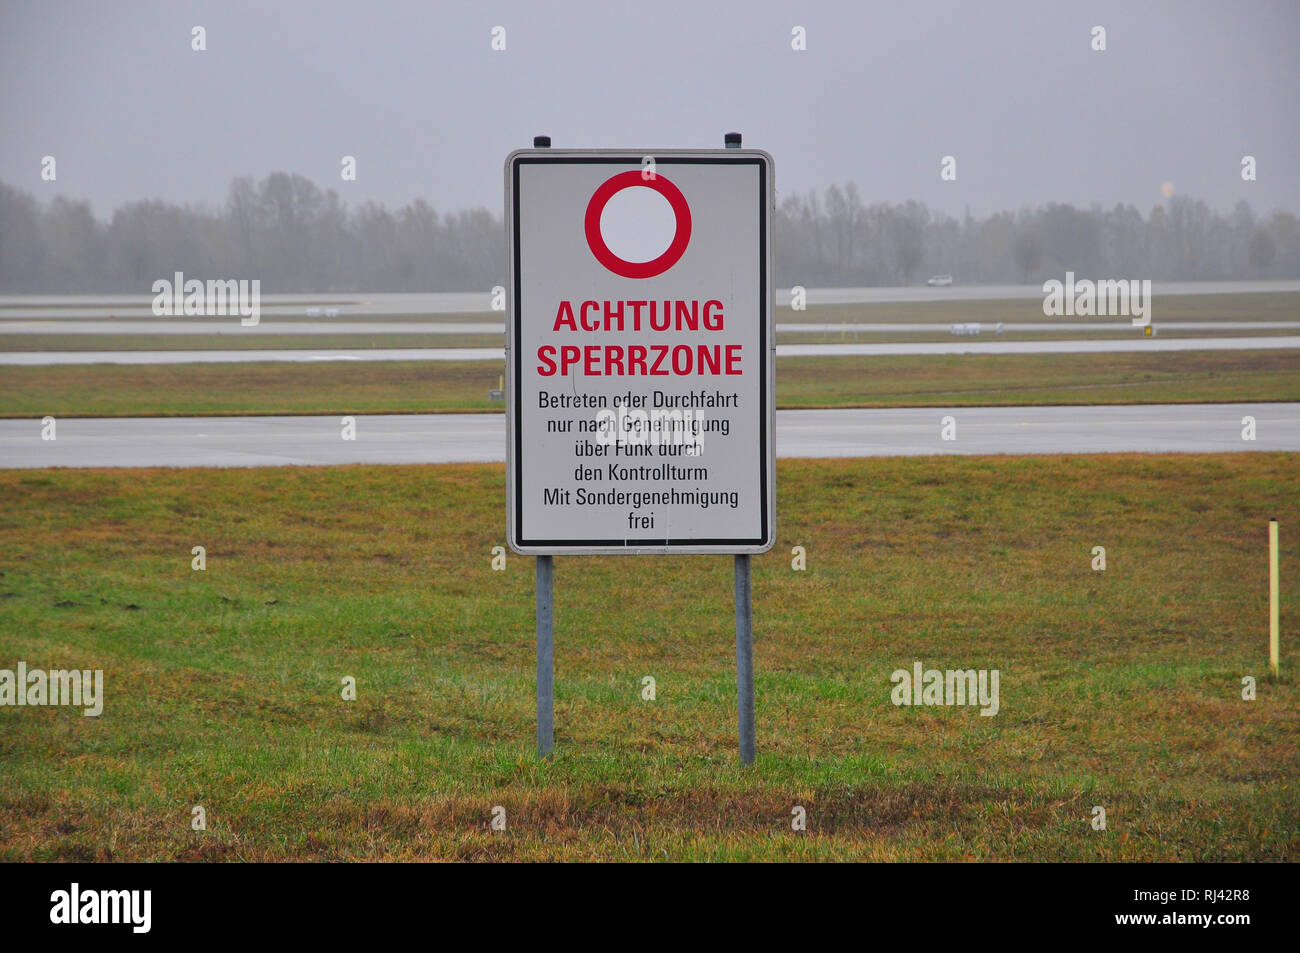 Zivilluftfahrt, Luftverkehr, Flughafen, Startbahnen, Warnhinweis, Stock Photo